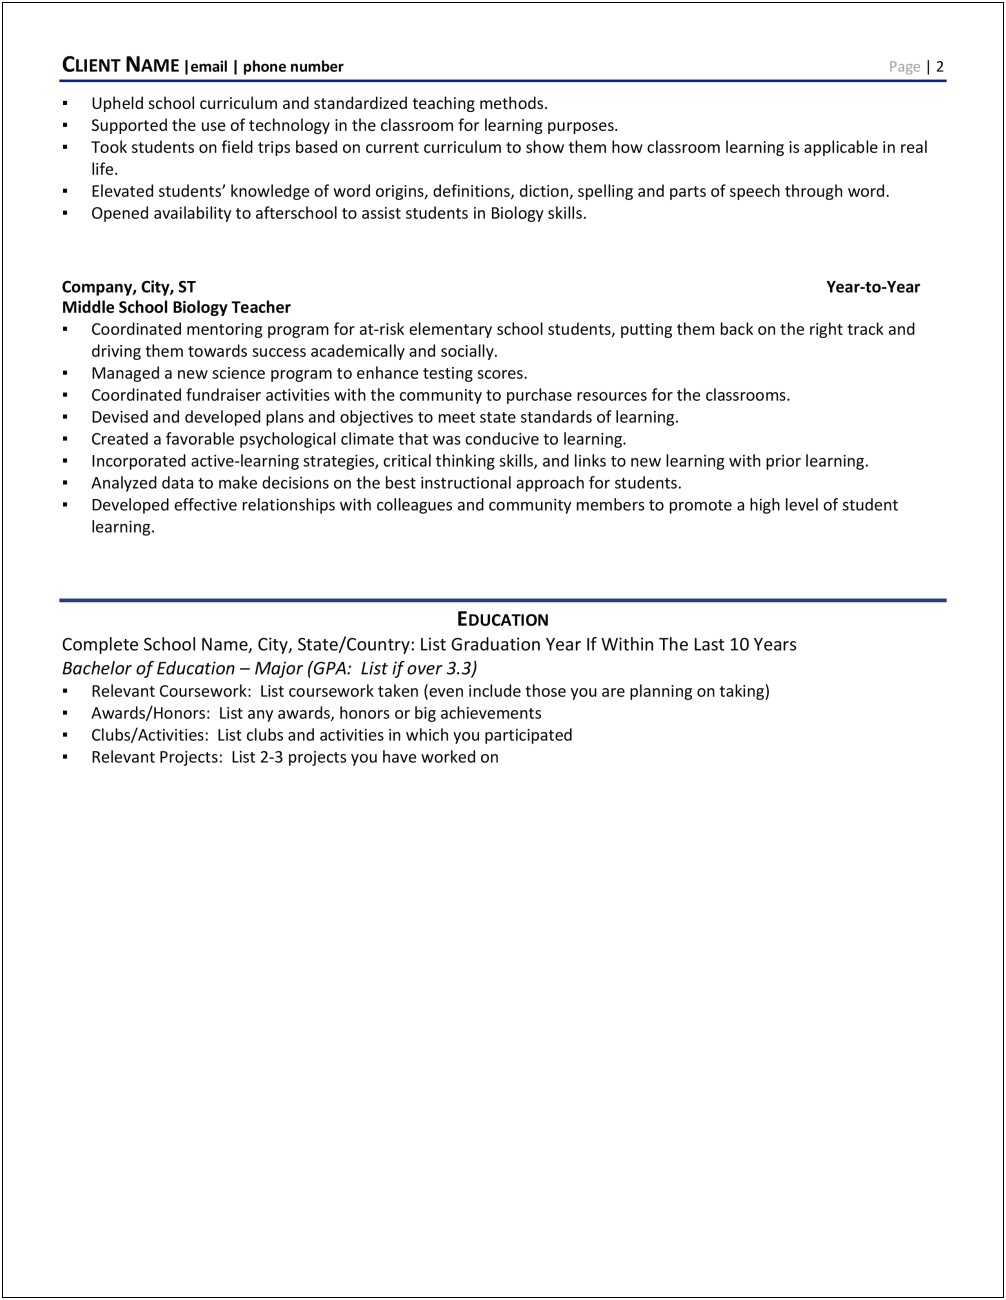 Resume Objective For New Biology Teacher Job